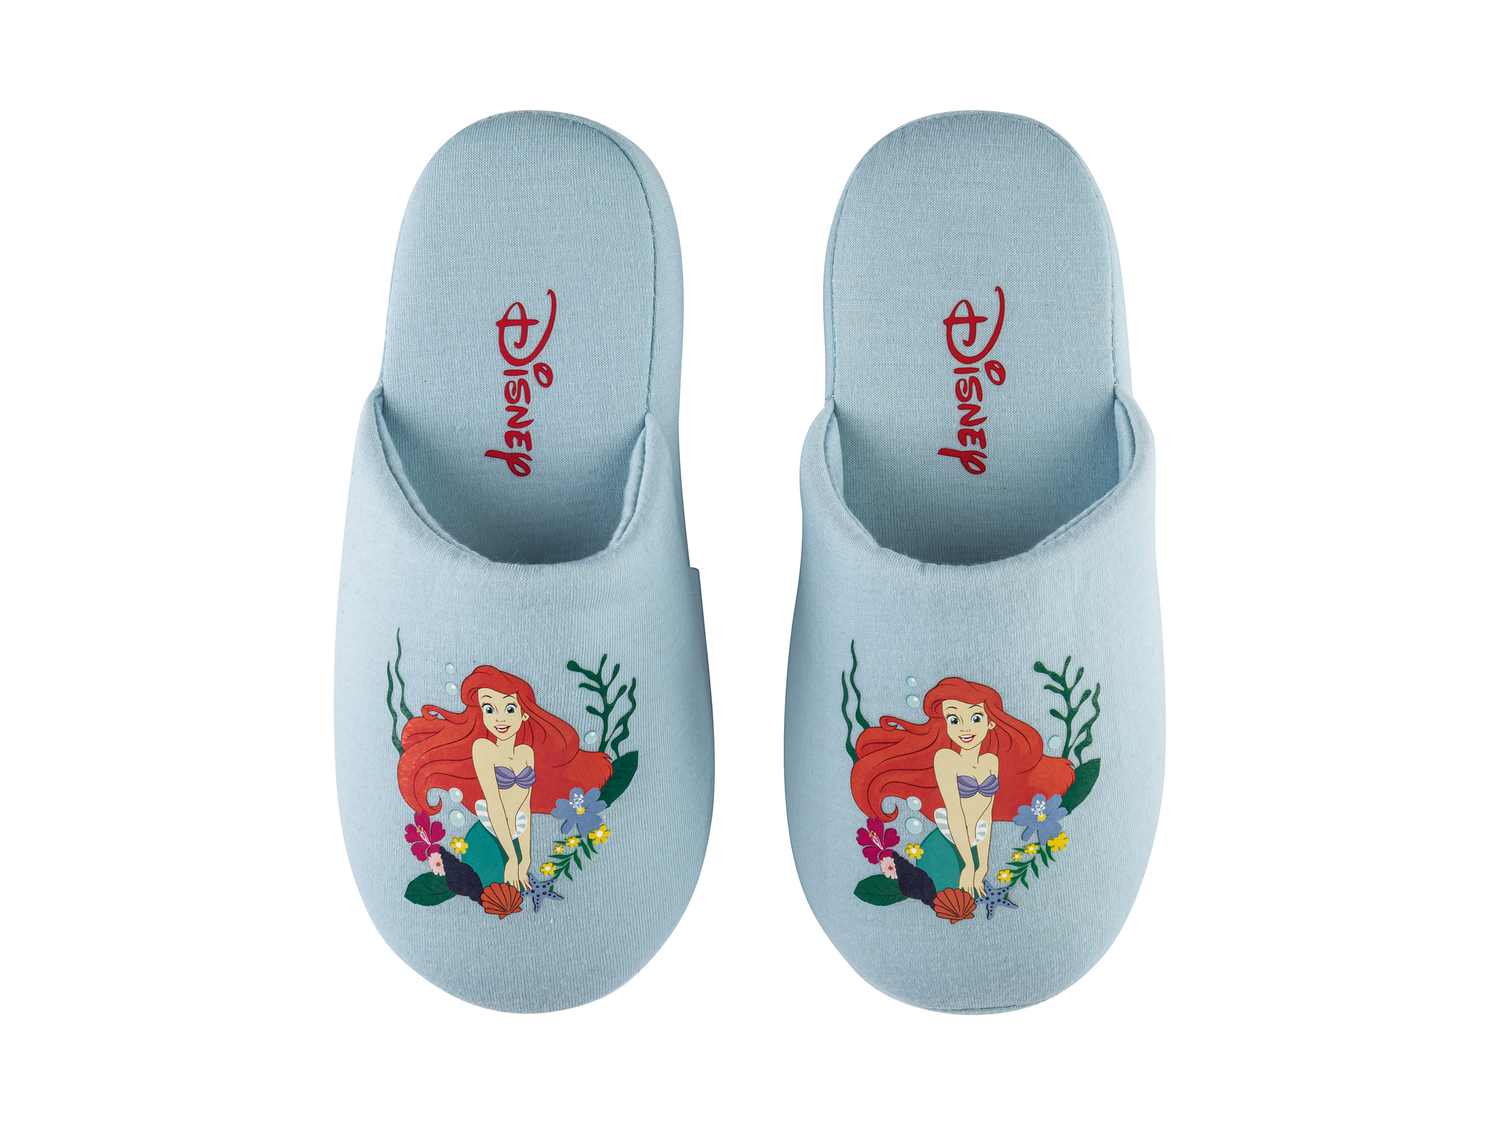 Pantofole da bambina Mickey Mouse, Paw Patrol, La Sirenetta , prezzo 4.99 € 
Misure: ...